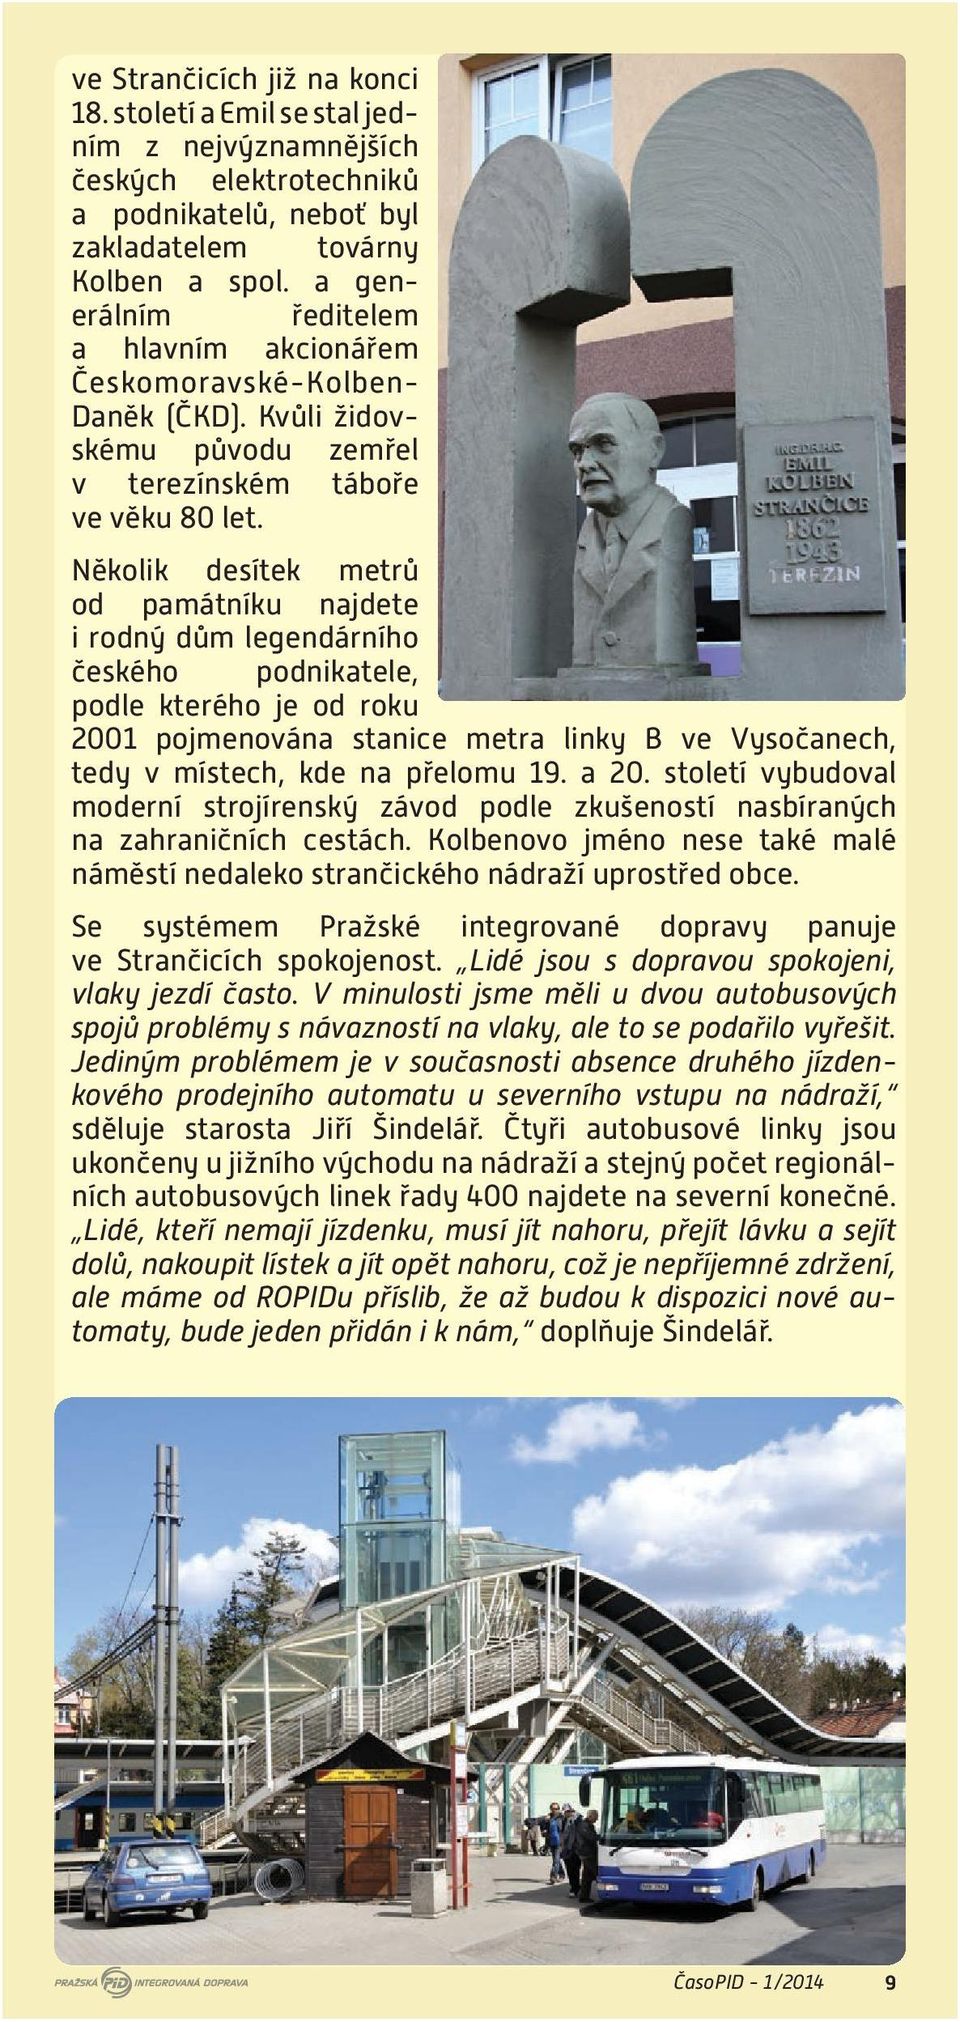 Několik desítek metrů od památníku najdete i rodný dům legendárního českého podnikatele, podle kterého je od roku 2001 pojmenována stanice metra linky B ve Vysočanech, tedy v místech, kde na přelomu